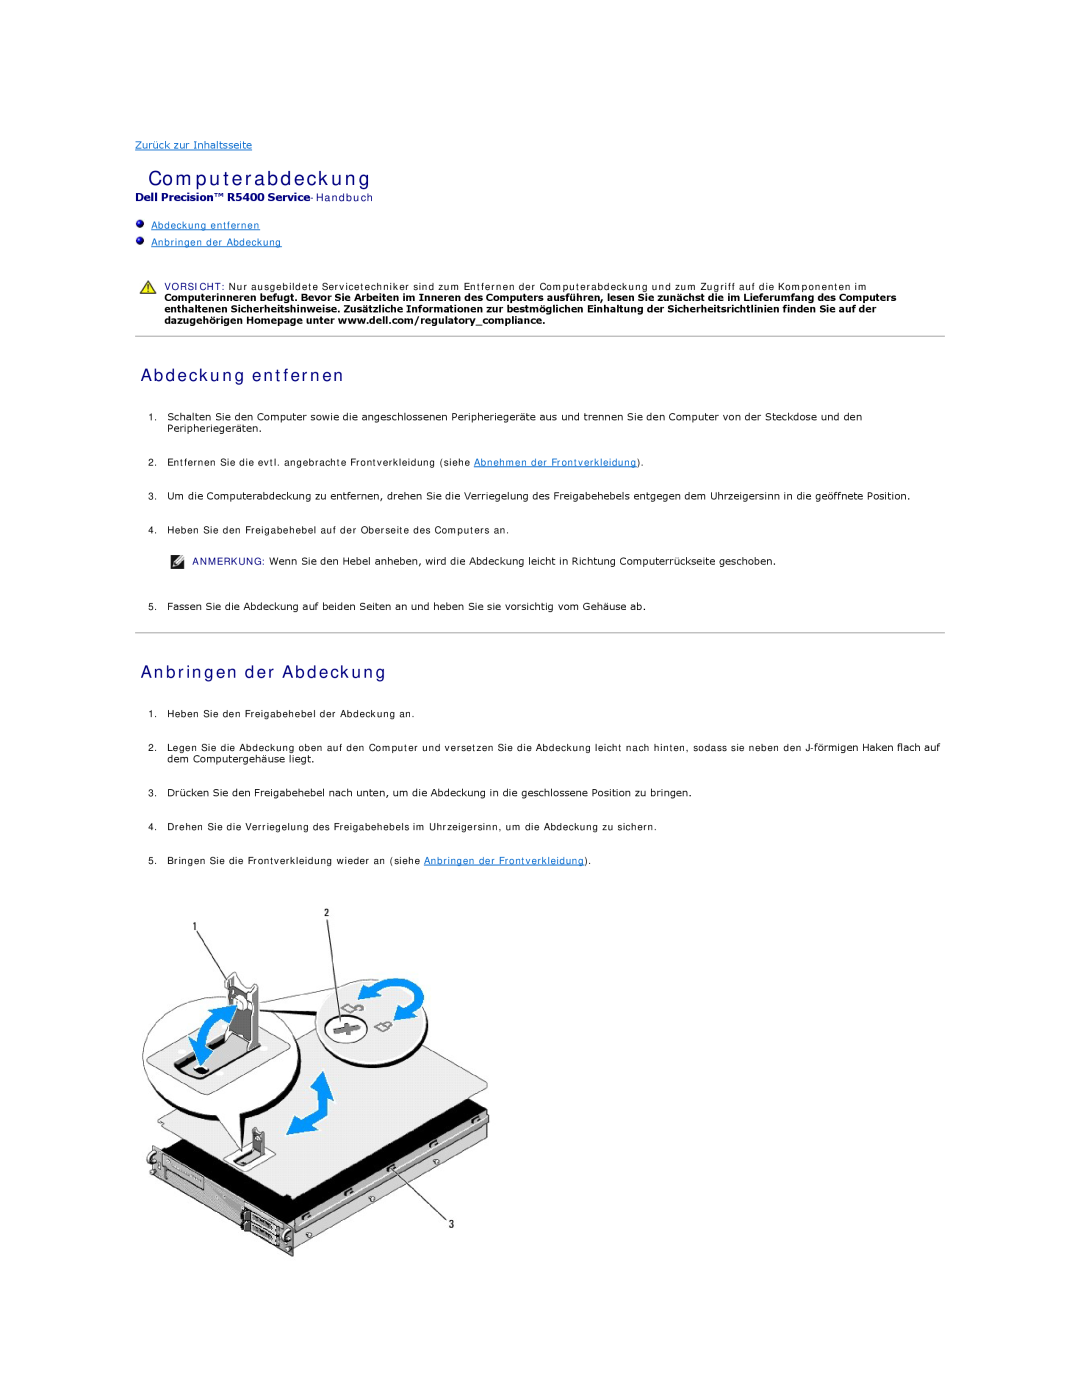 Dell Computerabdeckung, Abdeckung entfernen Anbringen der Abdeckung, Dell Precision R5400 Service-Handbuch 